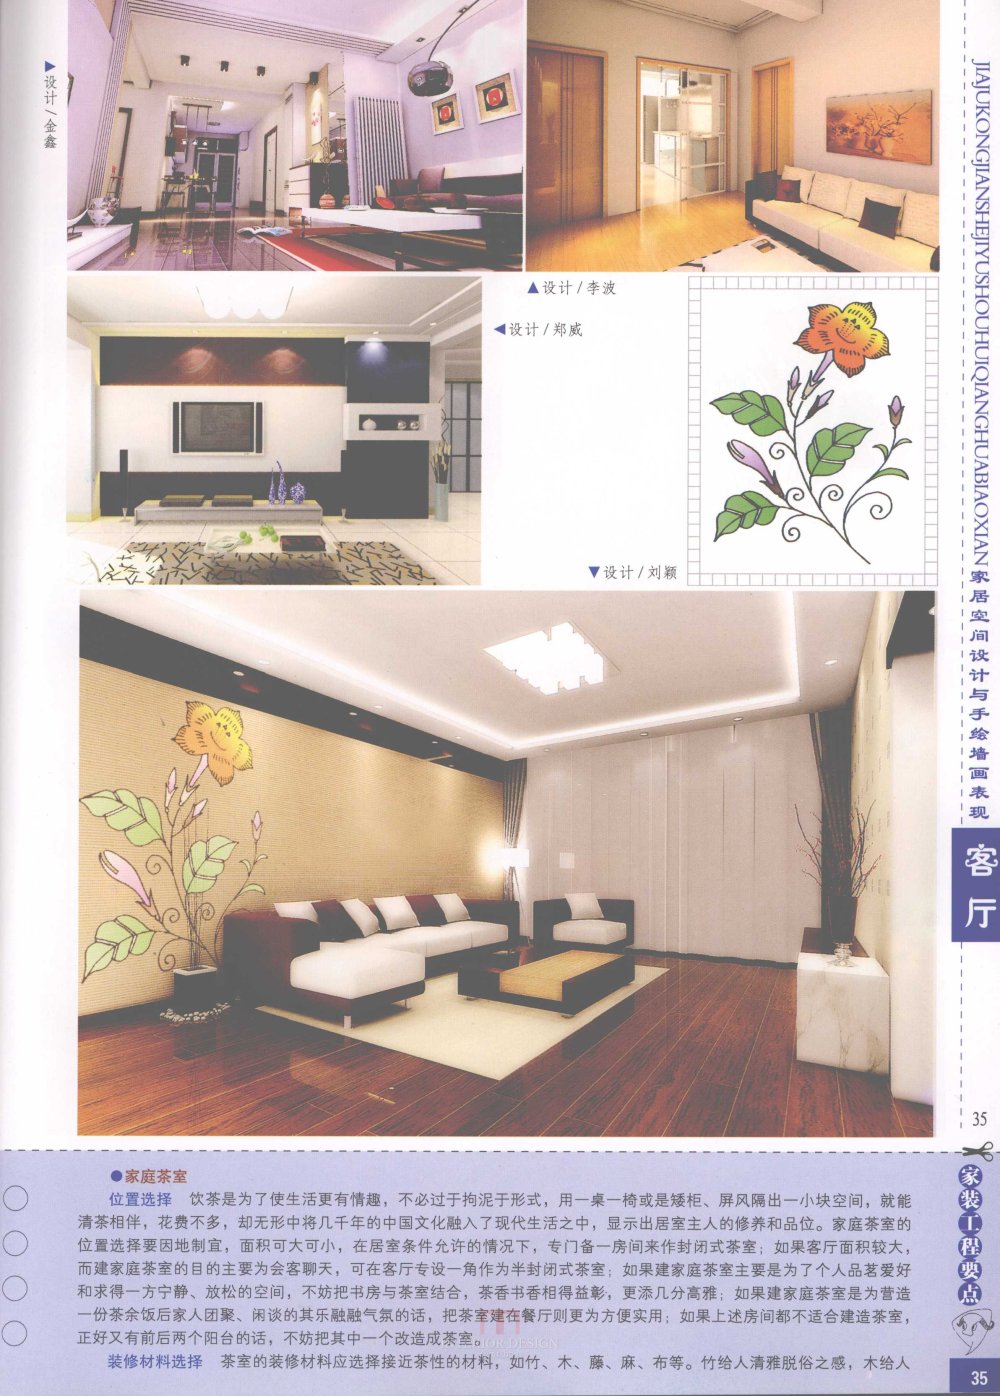 家居空间设计与手绘墙画表现客厅_家居空间设计与手绘墙画表现客厅-37.jpg